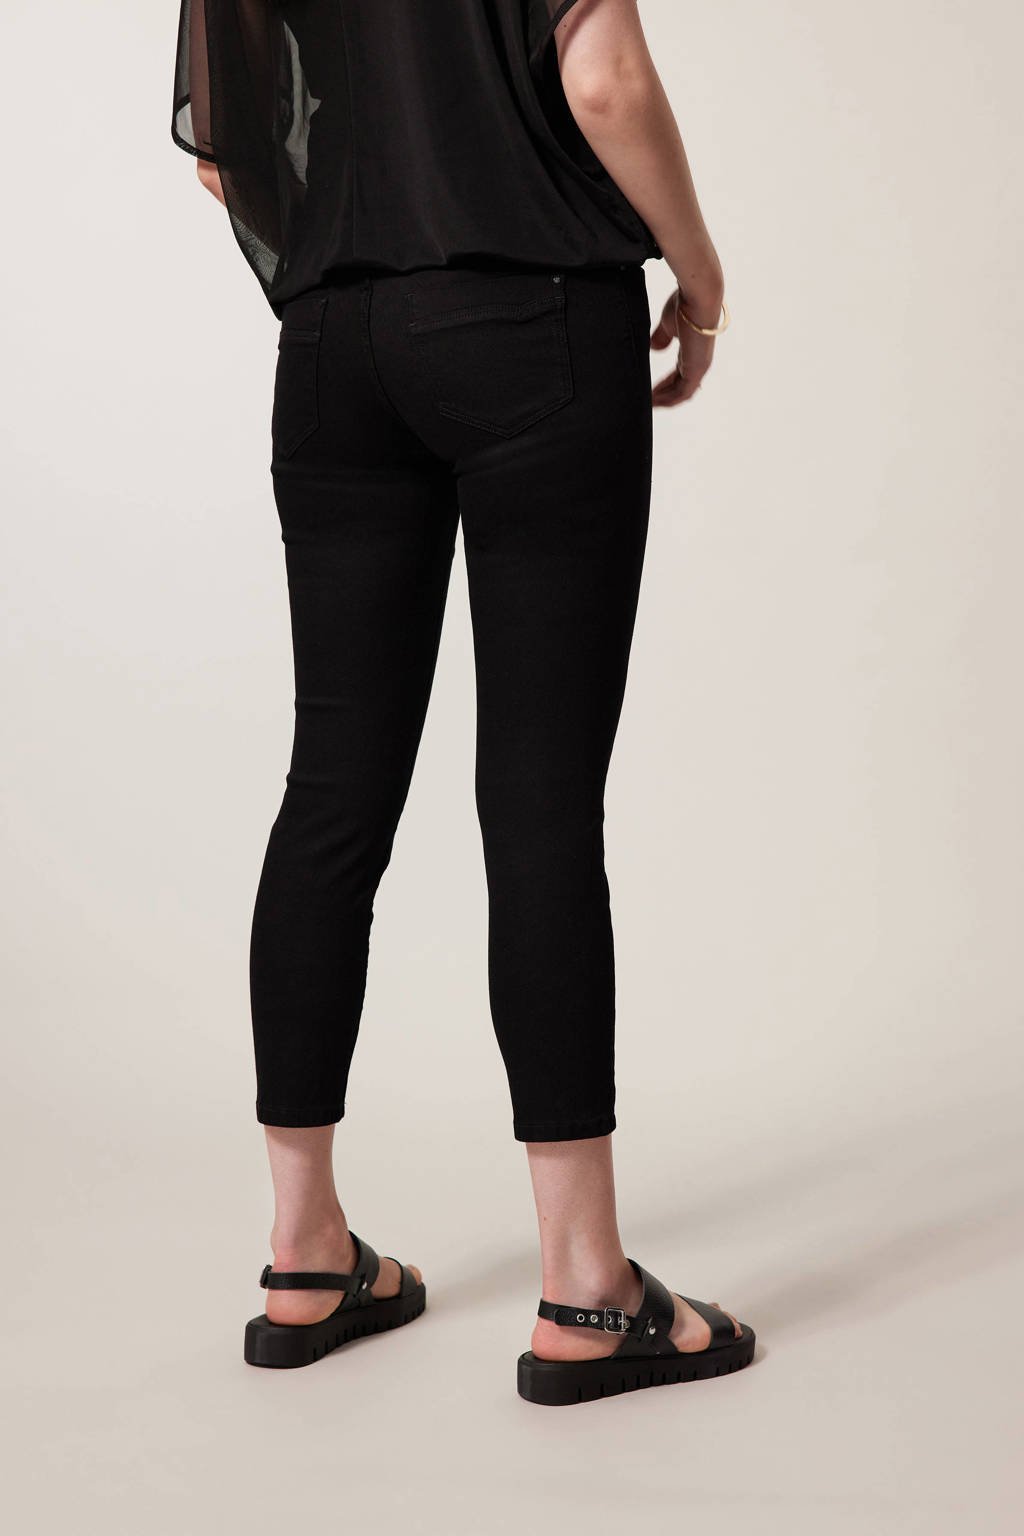 Appal ballon multifunctioneel Miss Etam slim fit broek Elise 7/8 black | wehkamp